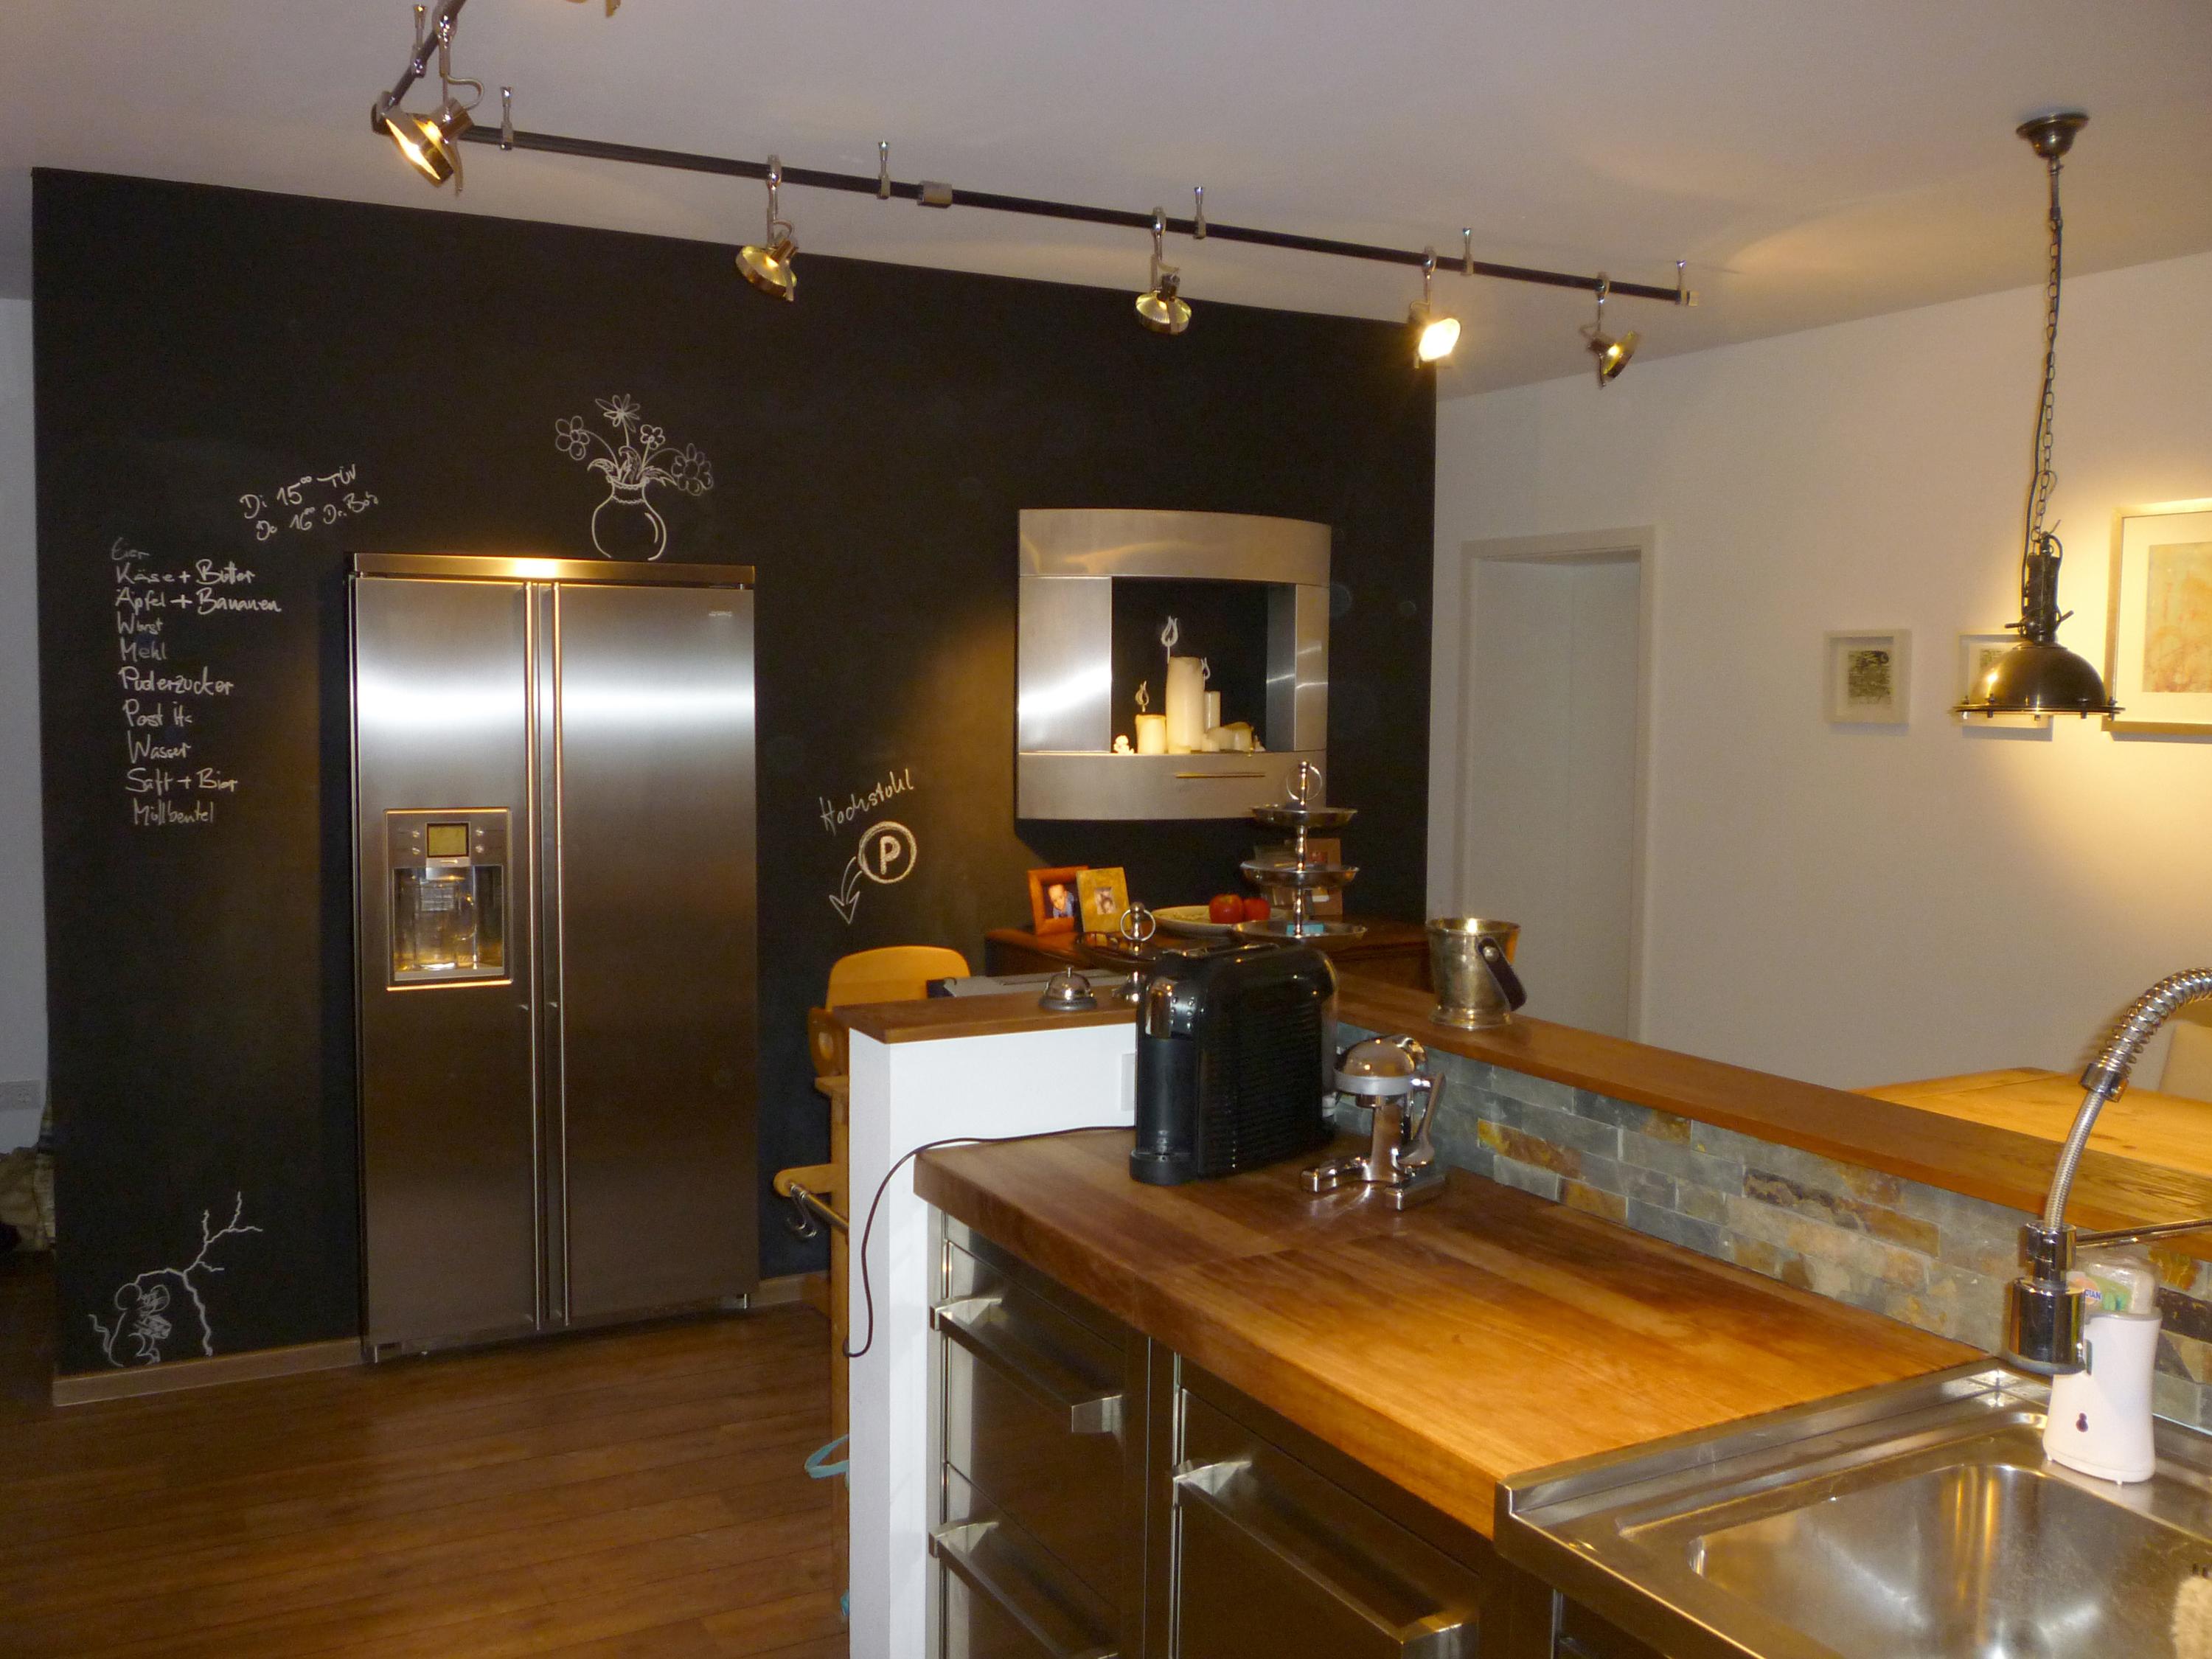 Küche mit Ansicht Tafelwand und Kamin/Kühlschrank #küche #steinwand #kühlschrank #tafelwand ©dieRaumpiraten